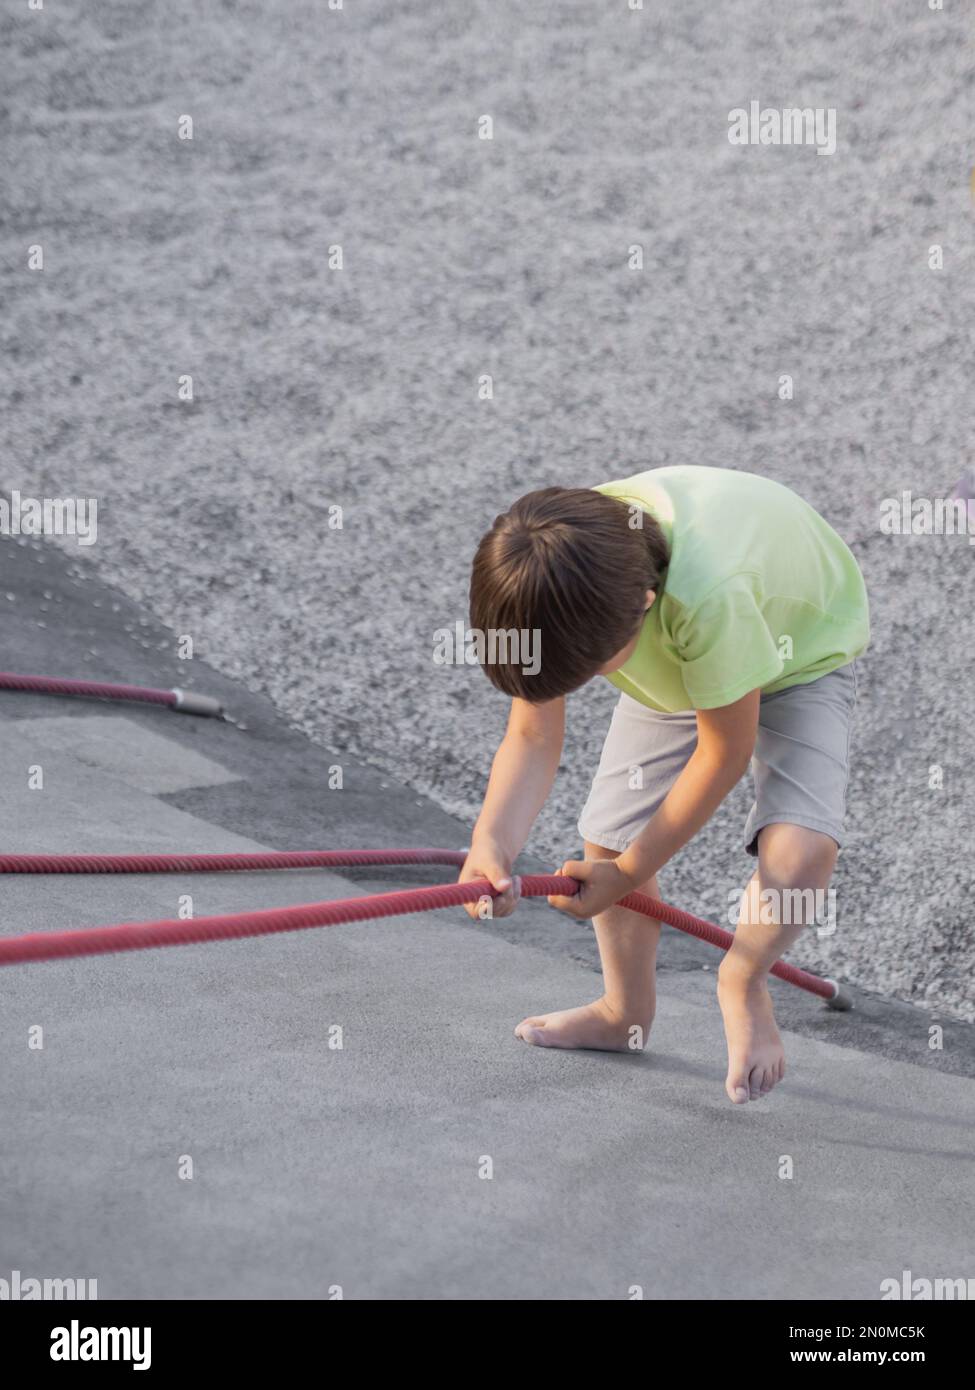 Der Junge klettert einen Betonhang auf dem modernen Kindersport- und Spielplatz hinauf. Das Kind überwindet die Angst und lernt neue Dinge. Aktive Freizeitaktivitäten im Freien. Stockfoto